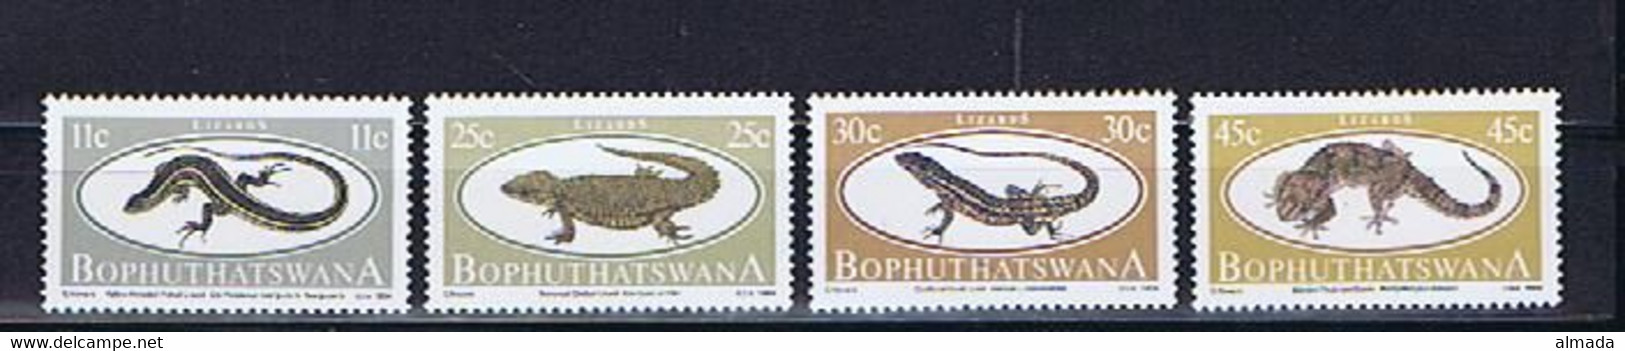 Bophuthatswana 1984: Michel-Nr. 129-132** Postfrisch / Mnh - Bophuthatswana